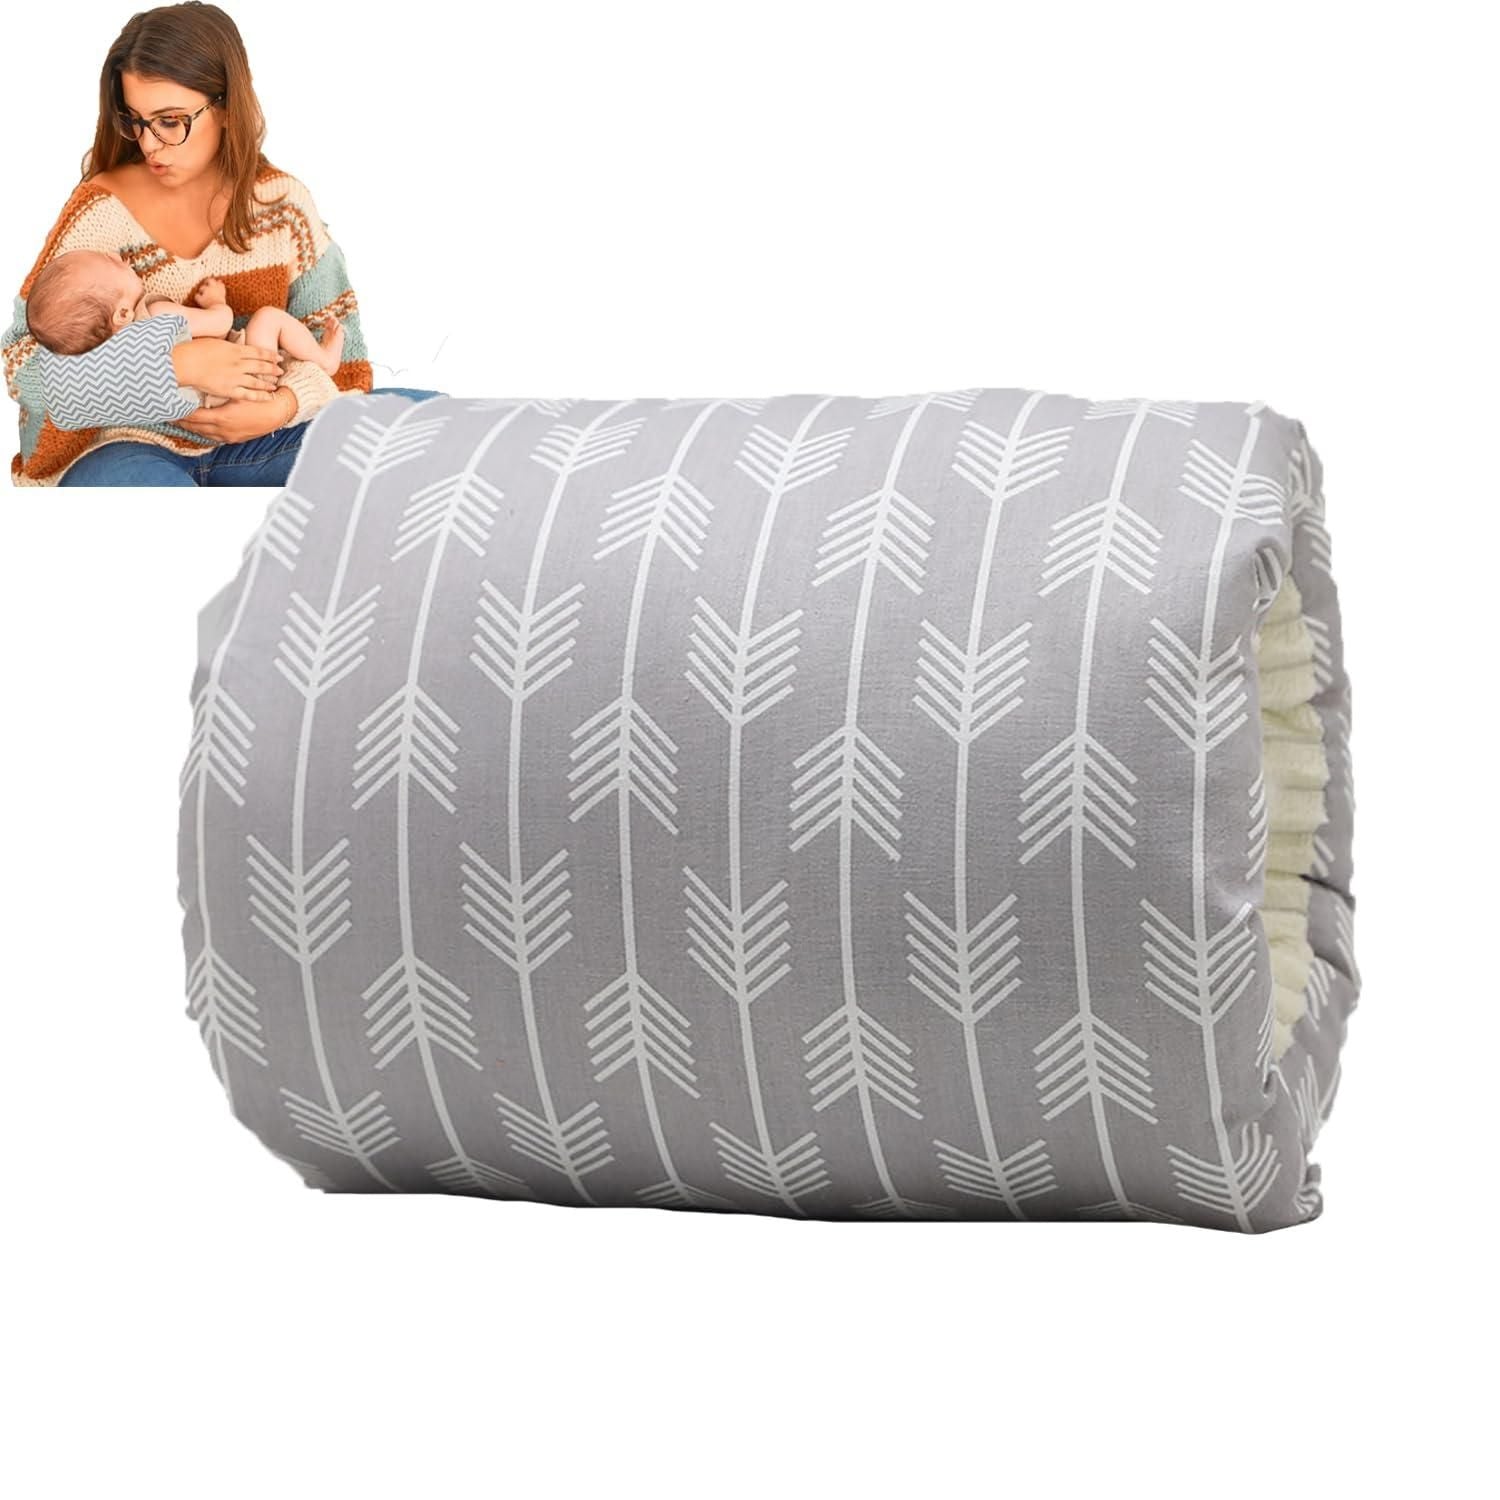 Cozie Cradle Baby Feeding Pillow